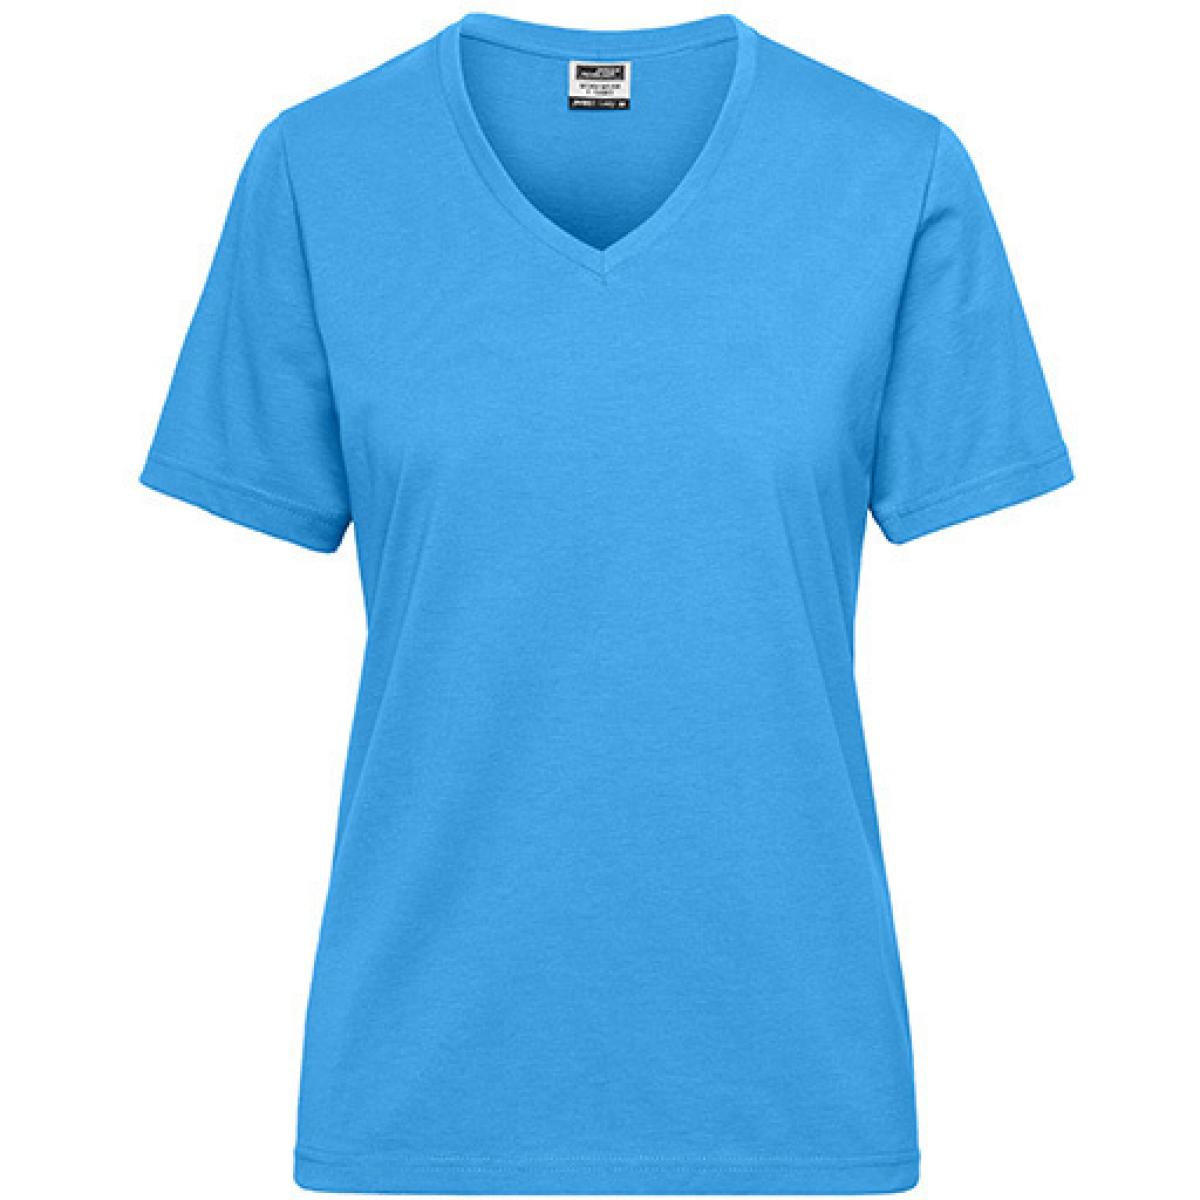 Hersteller: James+Nicholson Herstellernummer: JN1807 Artikelbezeichnung: Ladies‘ BIO Workwear T-Shirt / Damen T-Shirt - Waschbar 60C Farbe: Aqua